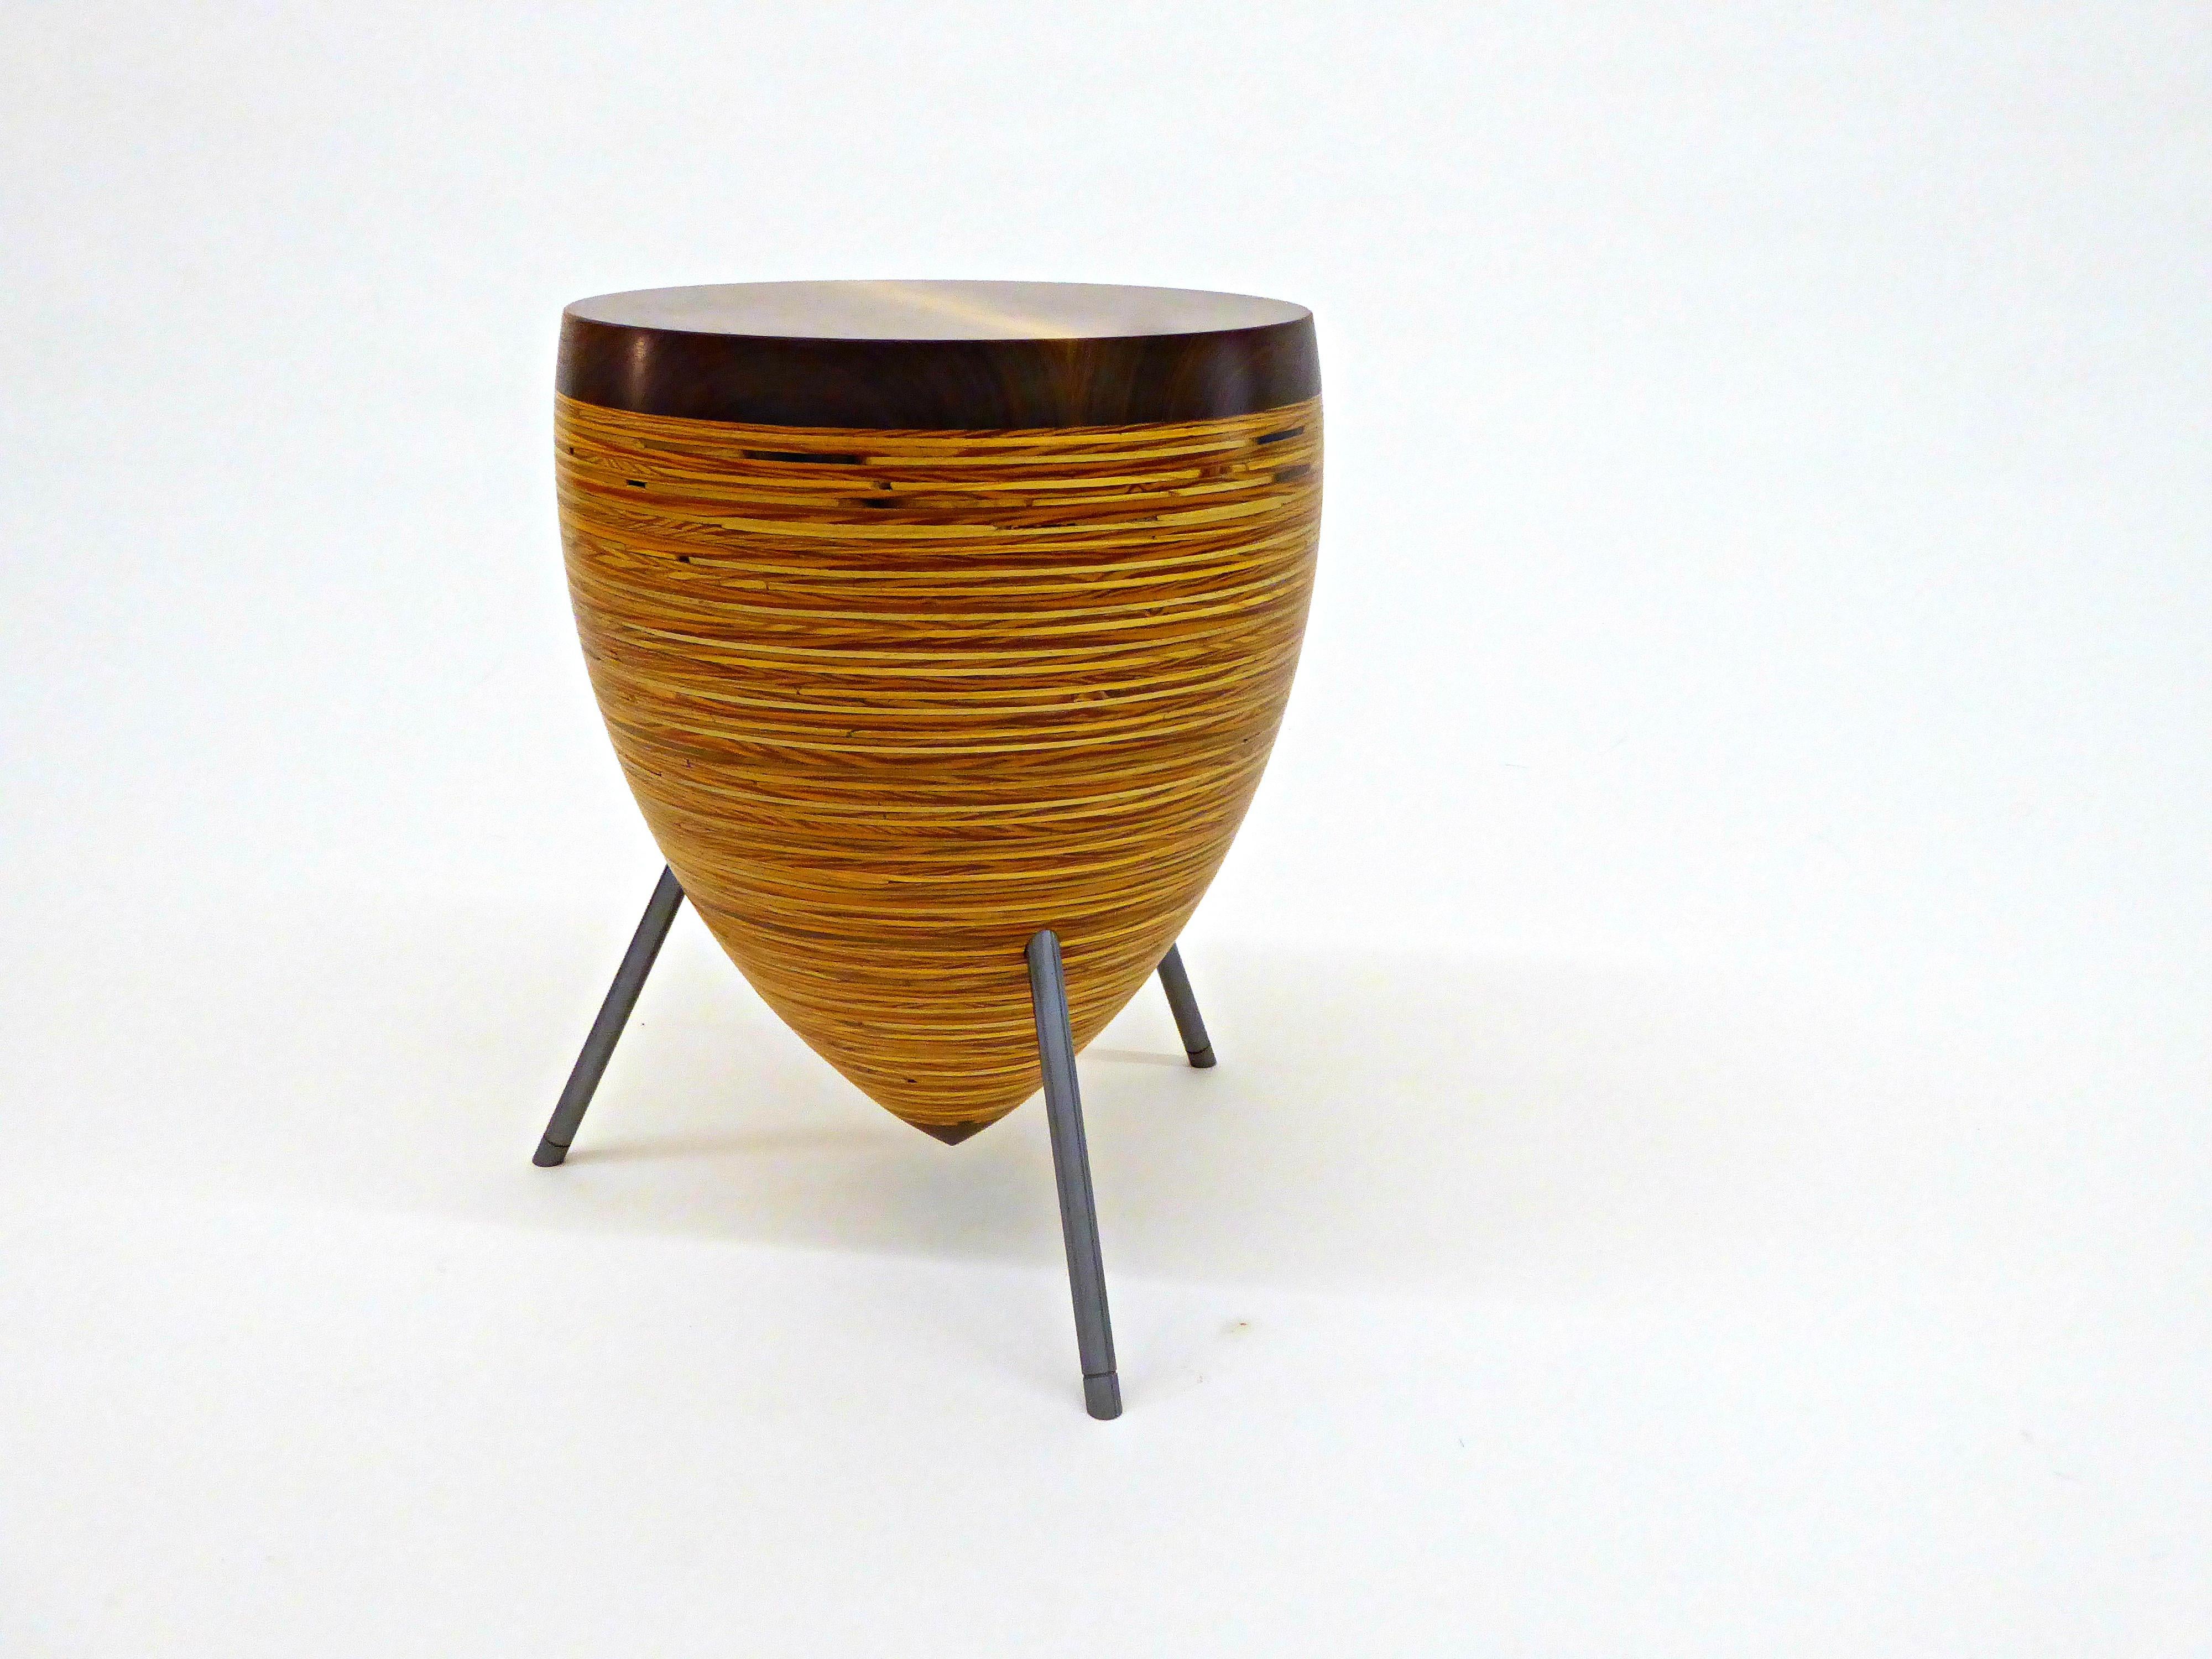 Trommelhocker/Tisch

Die Hocker-/Tischkollektion Drum, ein typisches Poux-Design, ist eine perfekte Verbindung von Material, Skulptur und Präzision. Die Massivholzplatte ist nahtlos mit einem Trichter aus geschichteten Sperrholzringen verbunden